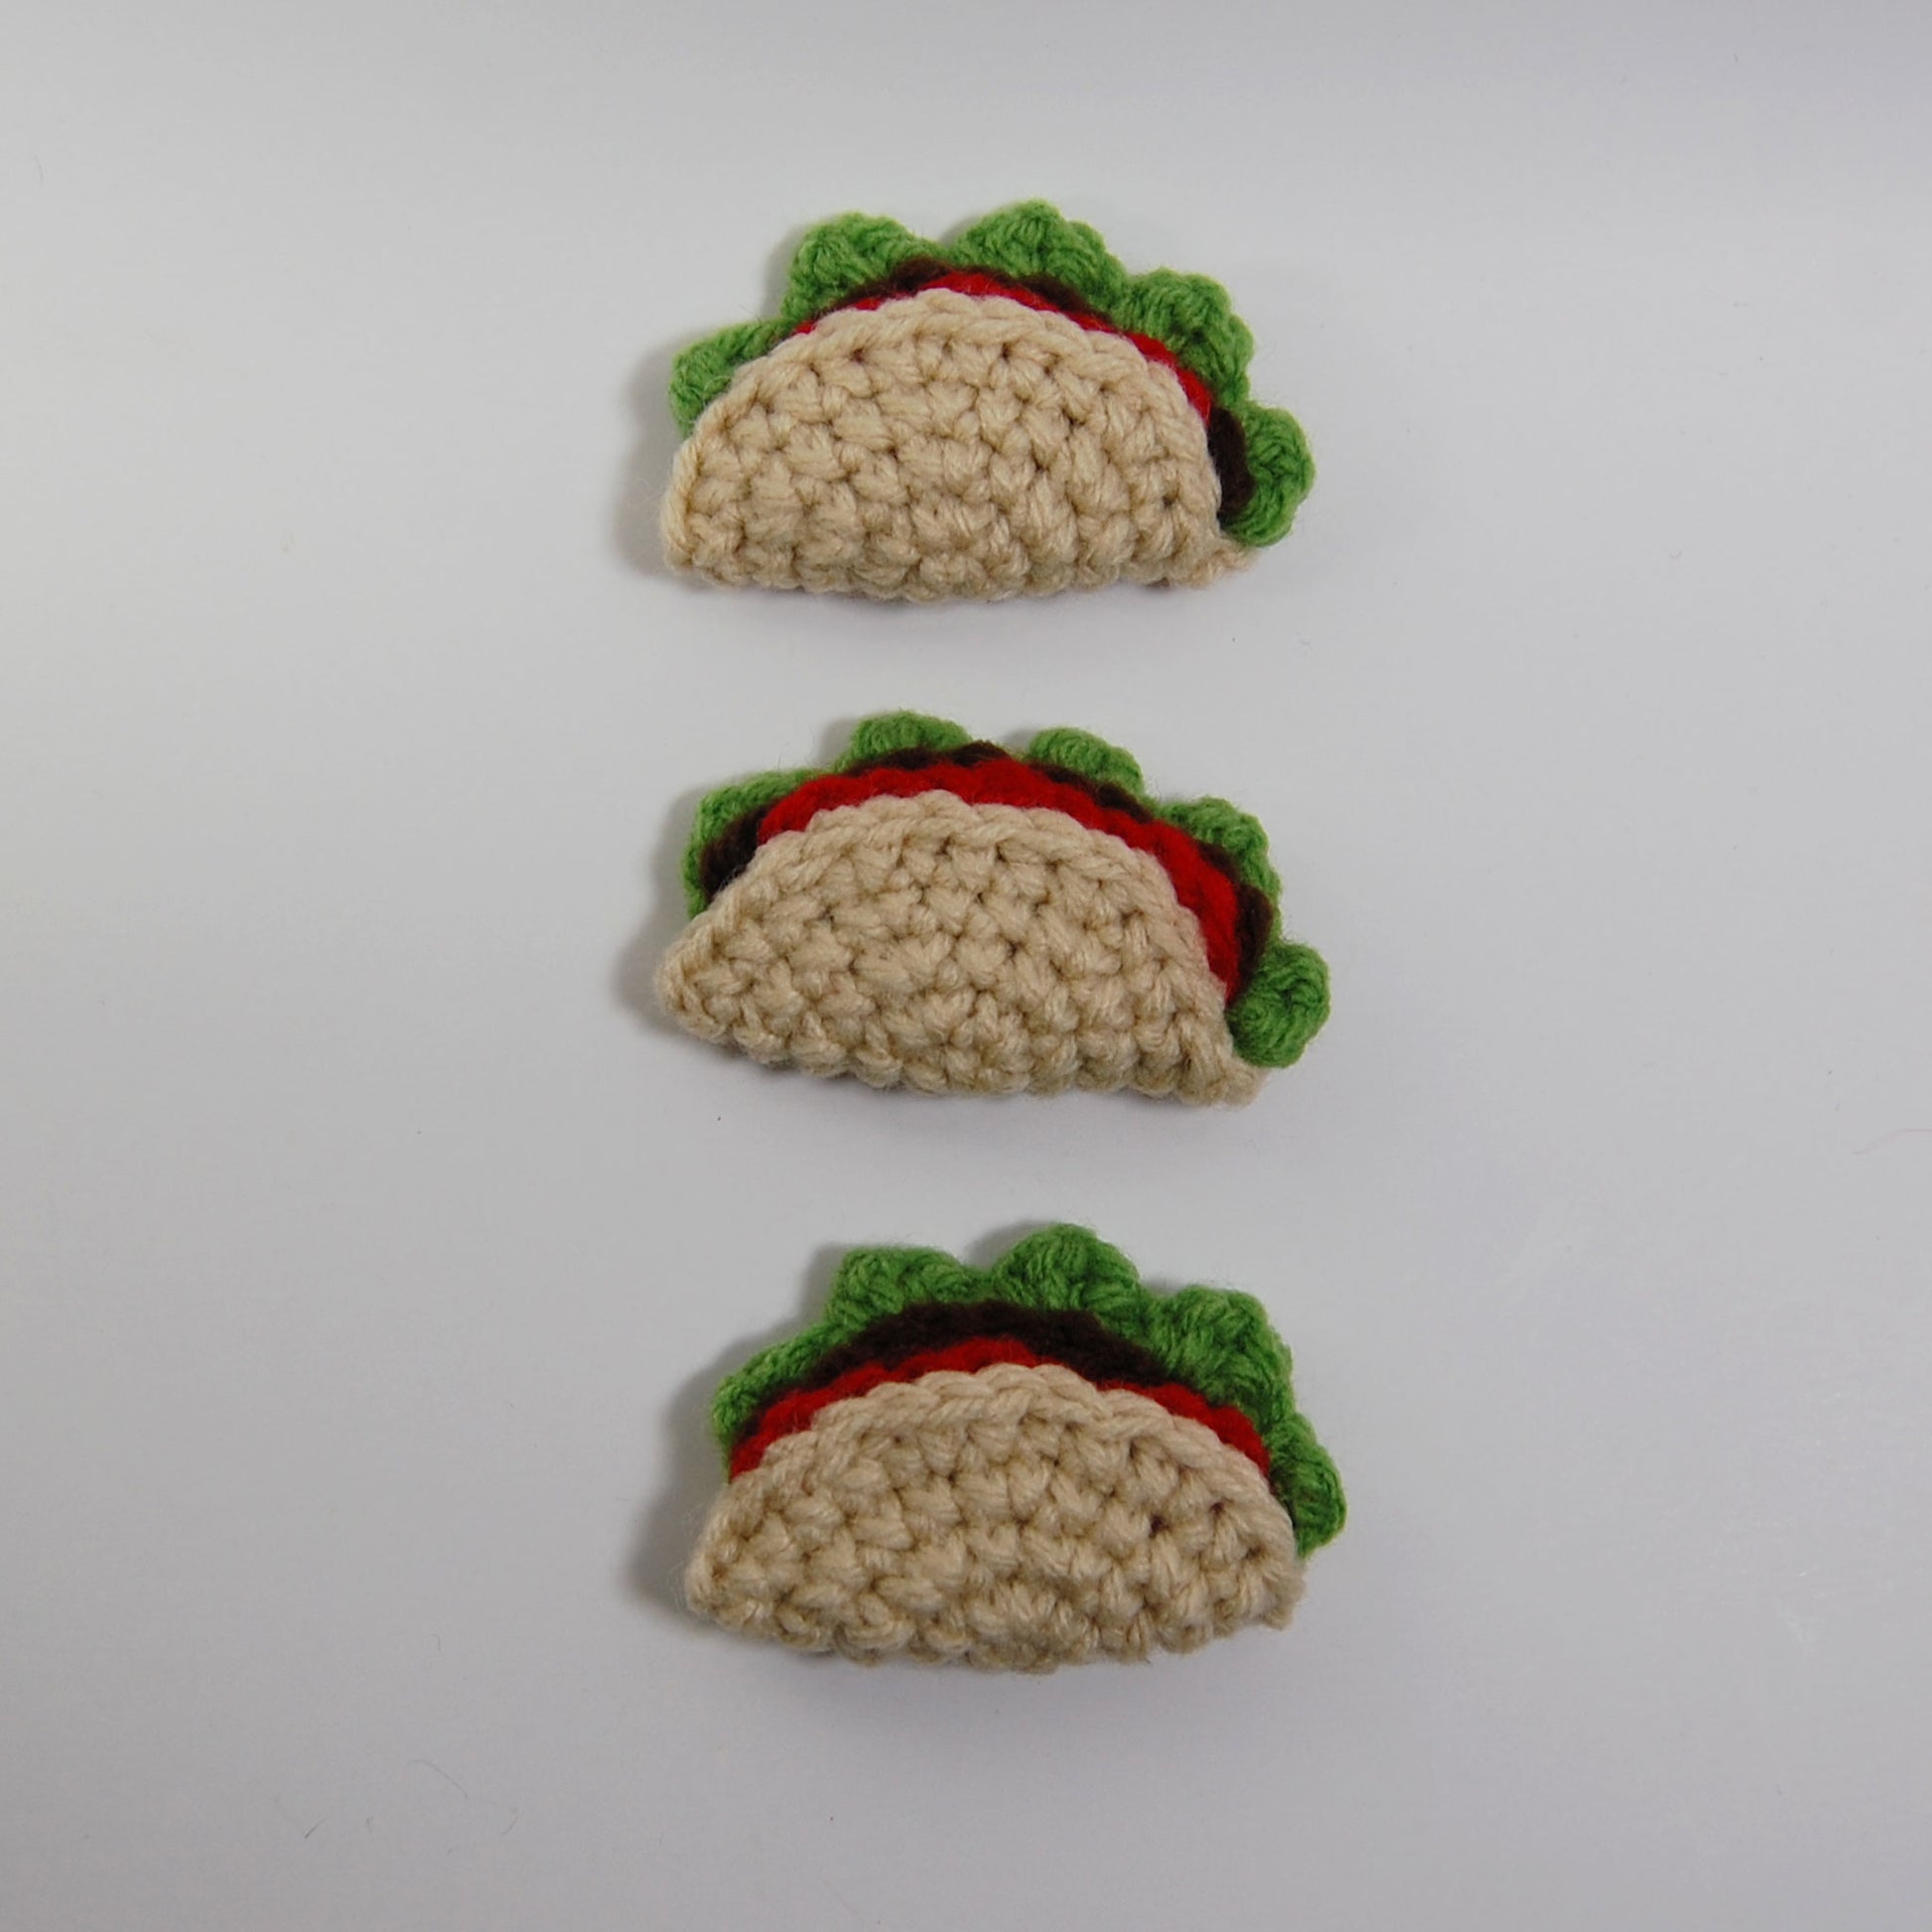 Snacky snack ☺️ pattern crochet cafe : r/crochet